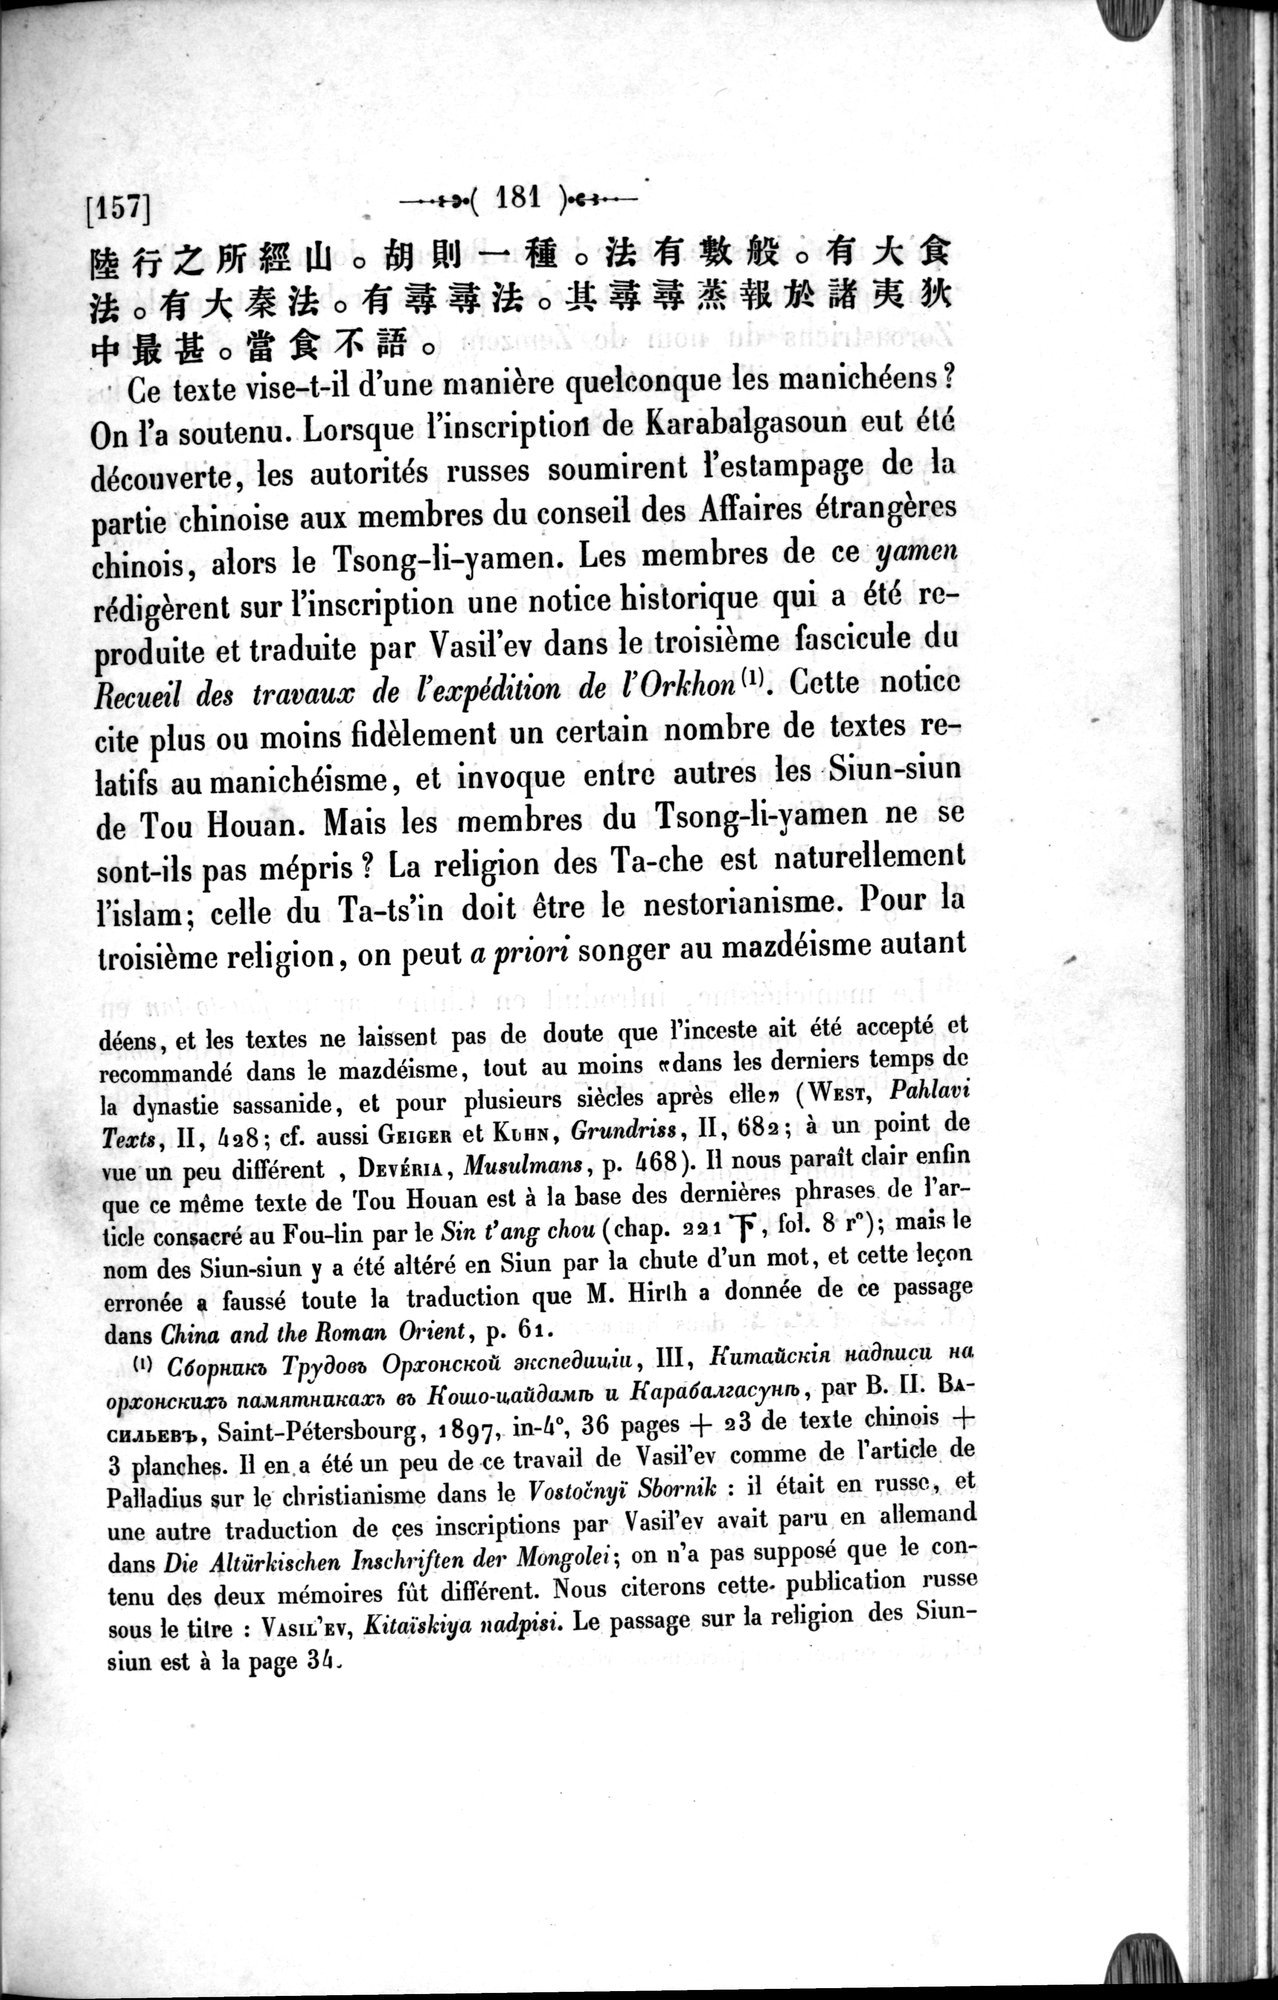 Un traité manichéen retrouvé en Chine : vol.1 / Page 191 (Grayscale High Resolution Image)